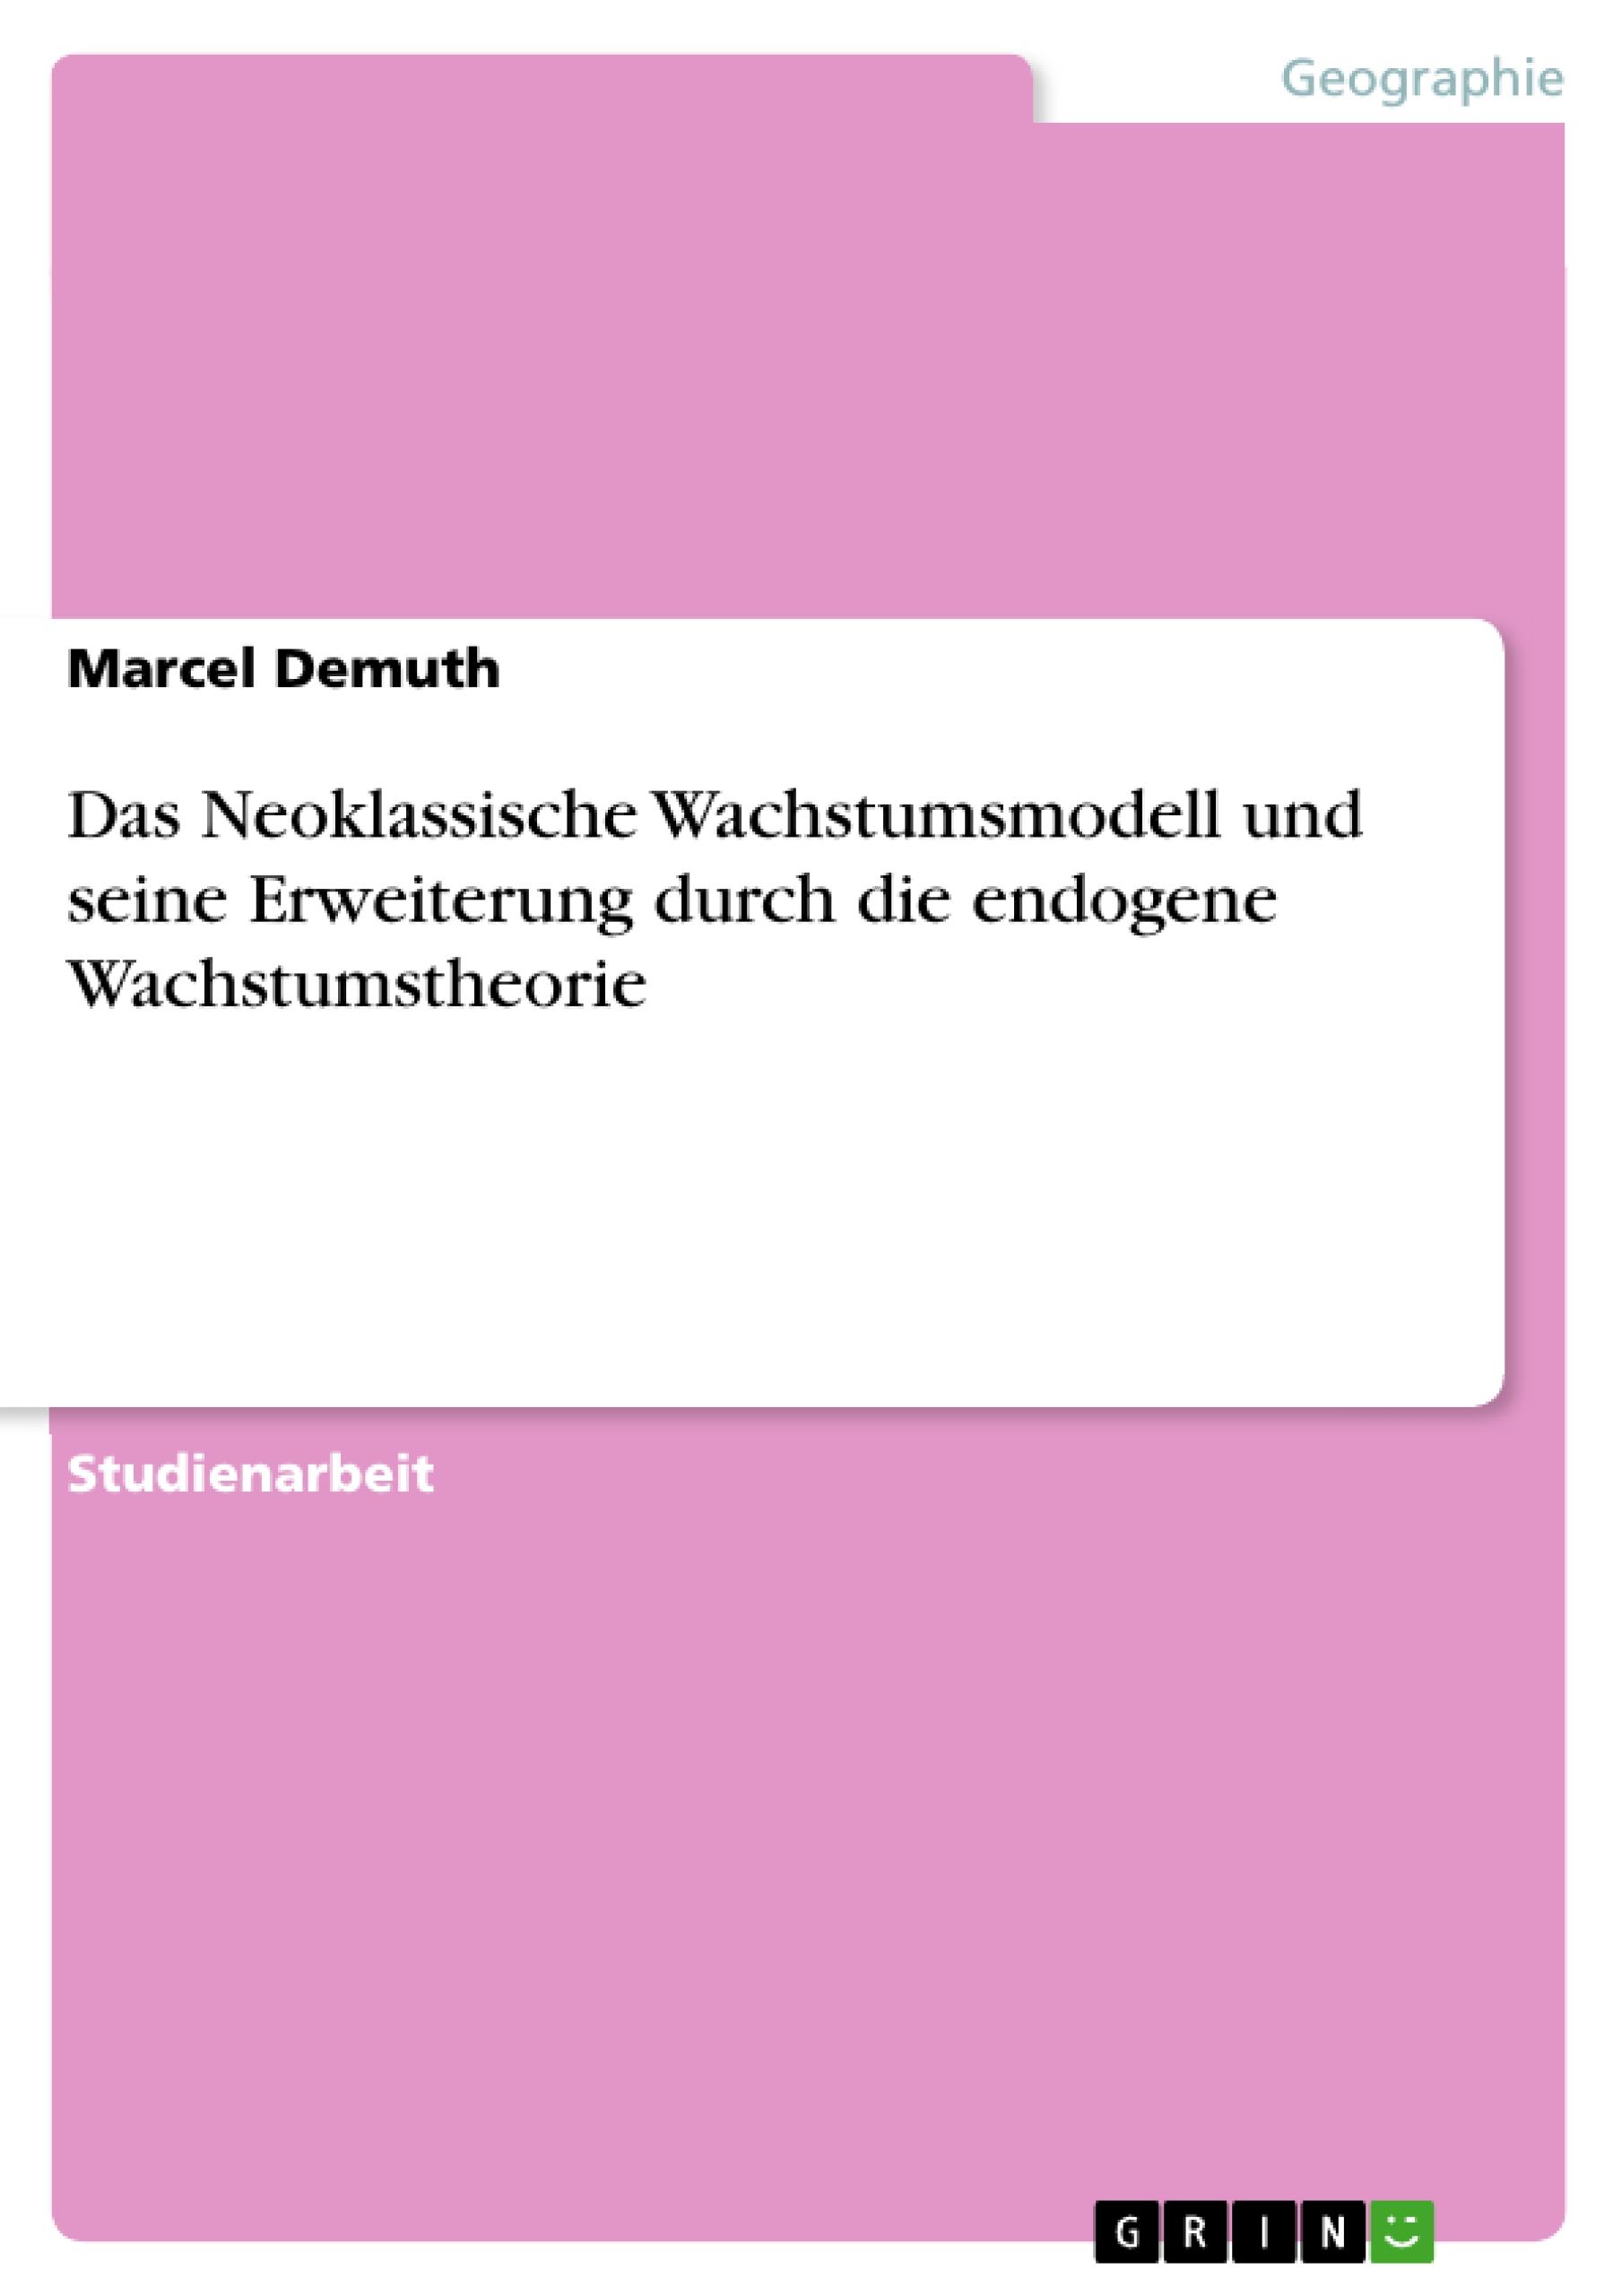 Das Neoklassische Wachstumsmodell und seine Erweiterung durch die endogene Wachstumstheorie - Demuth, Marcel